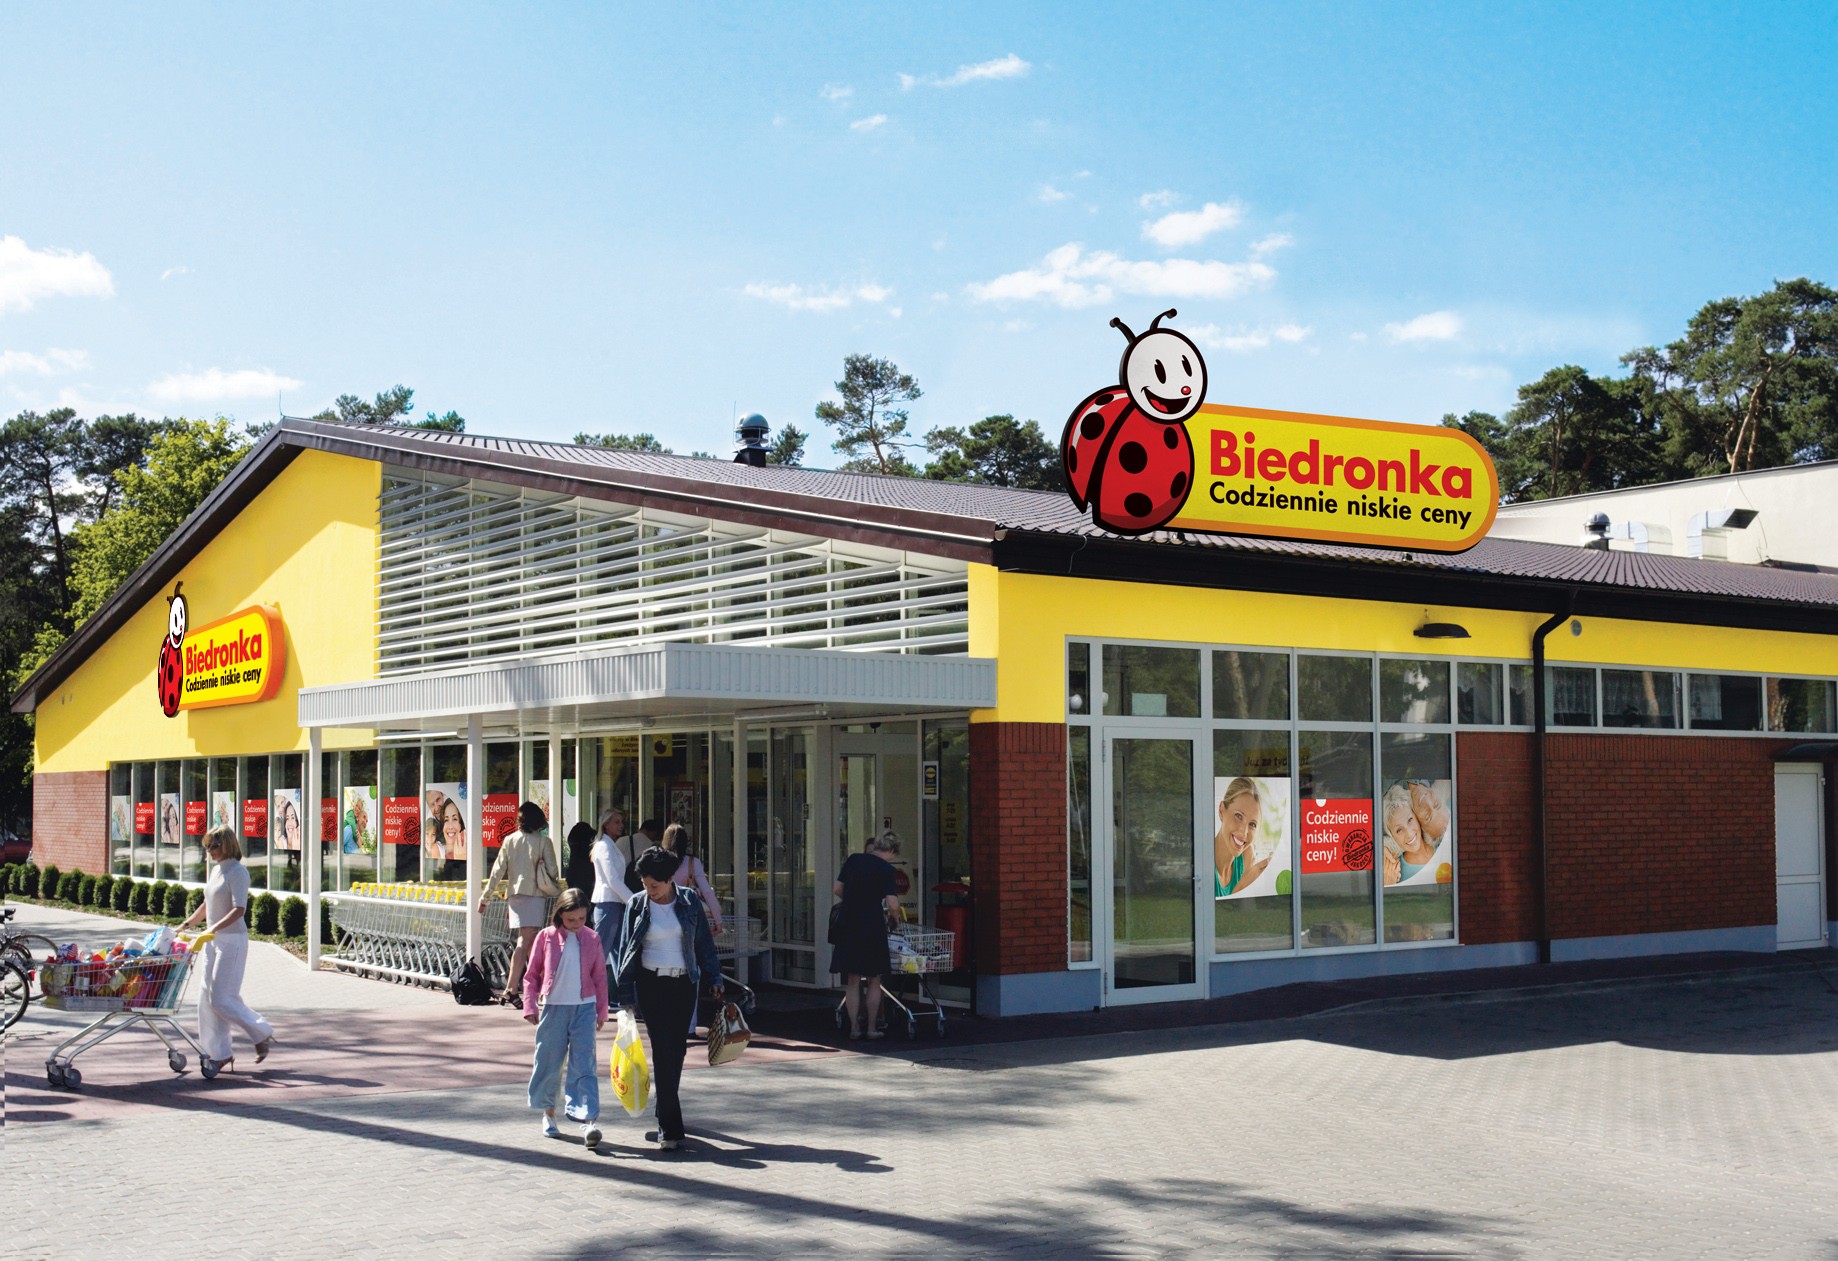 W 2013 r. otwarto 280 sklepów Biedronka i 2 nowe centra dystrybucyjne